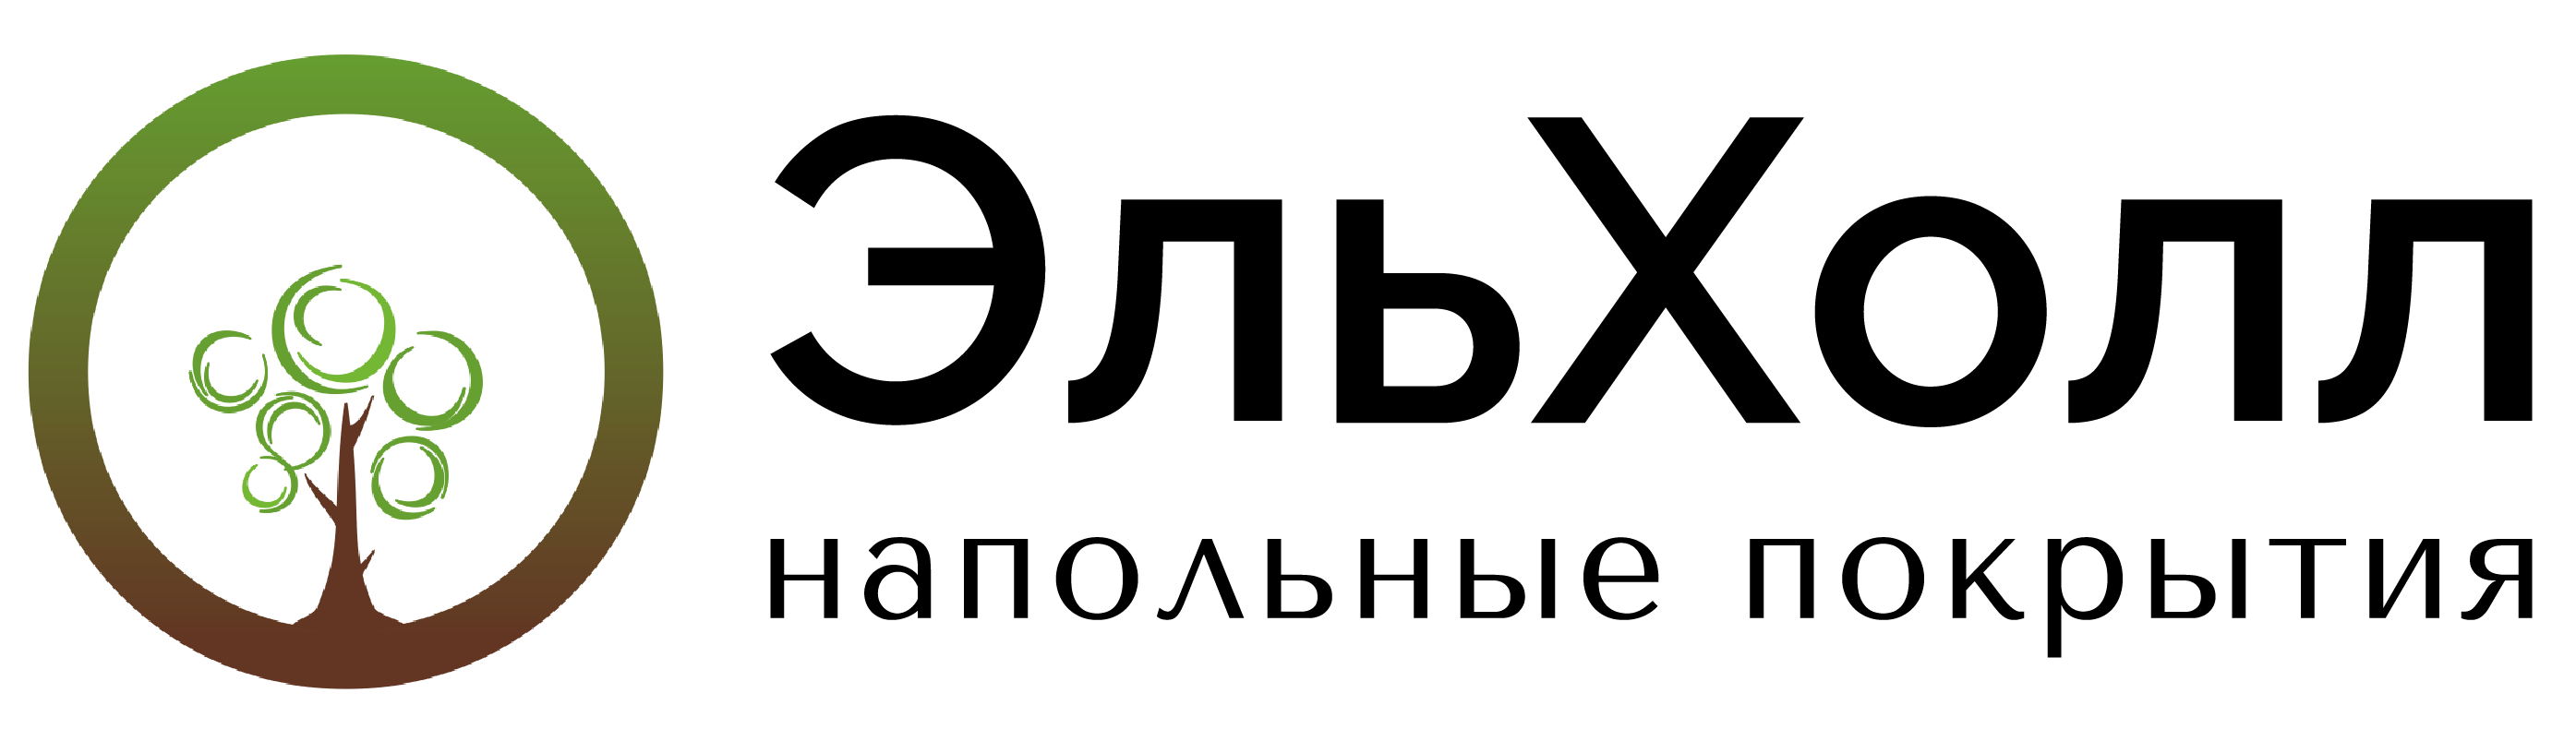 Логотип ЭЛЬХОЛЛ. Эльхолл